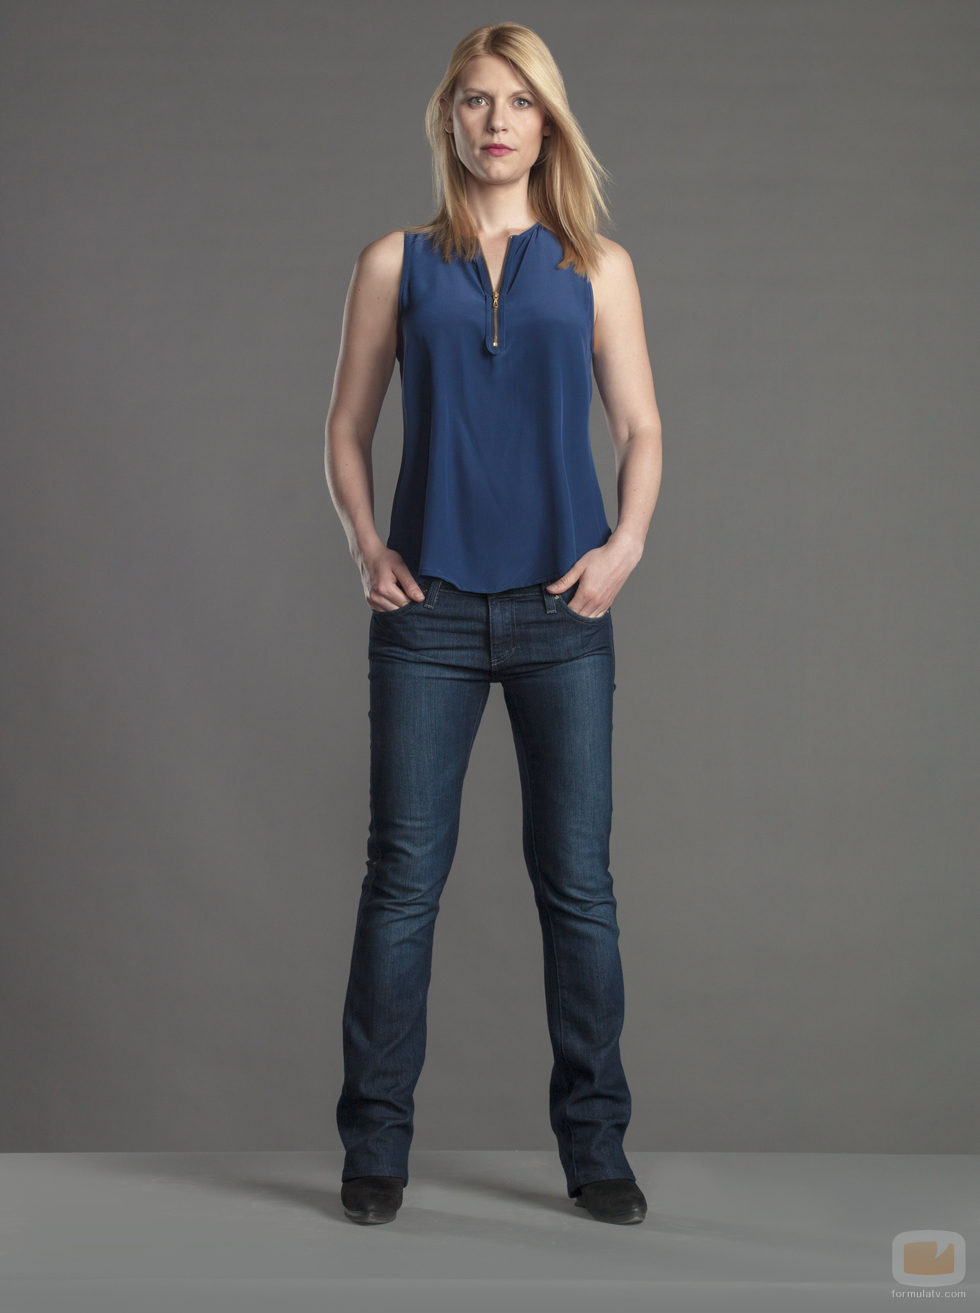 Claire Danes (Carrie Mathison) en la nueva temporada de 'Homeland'